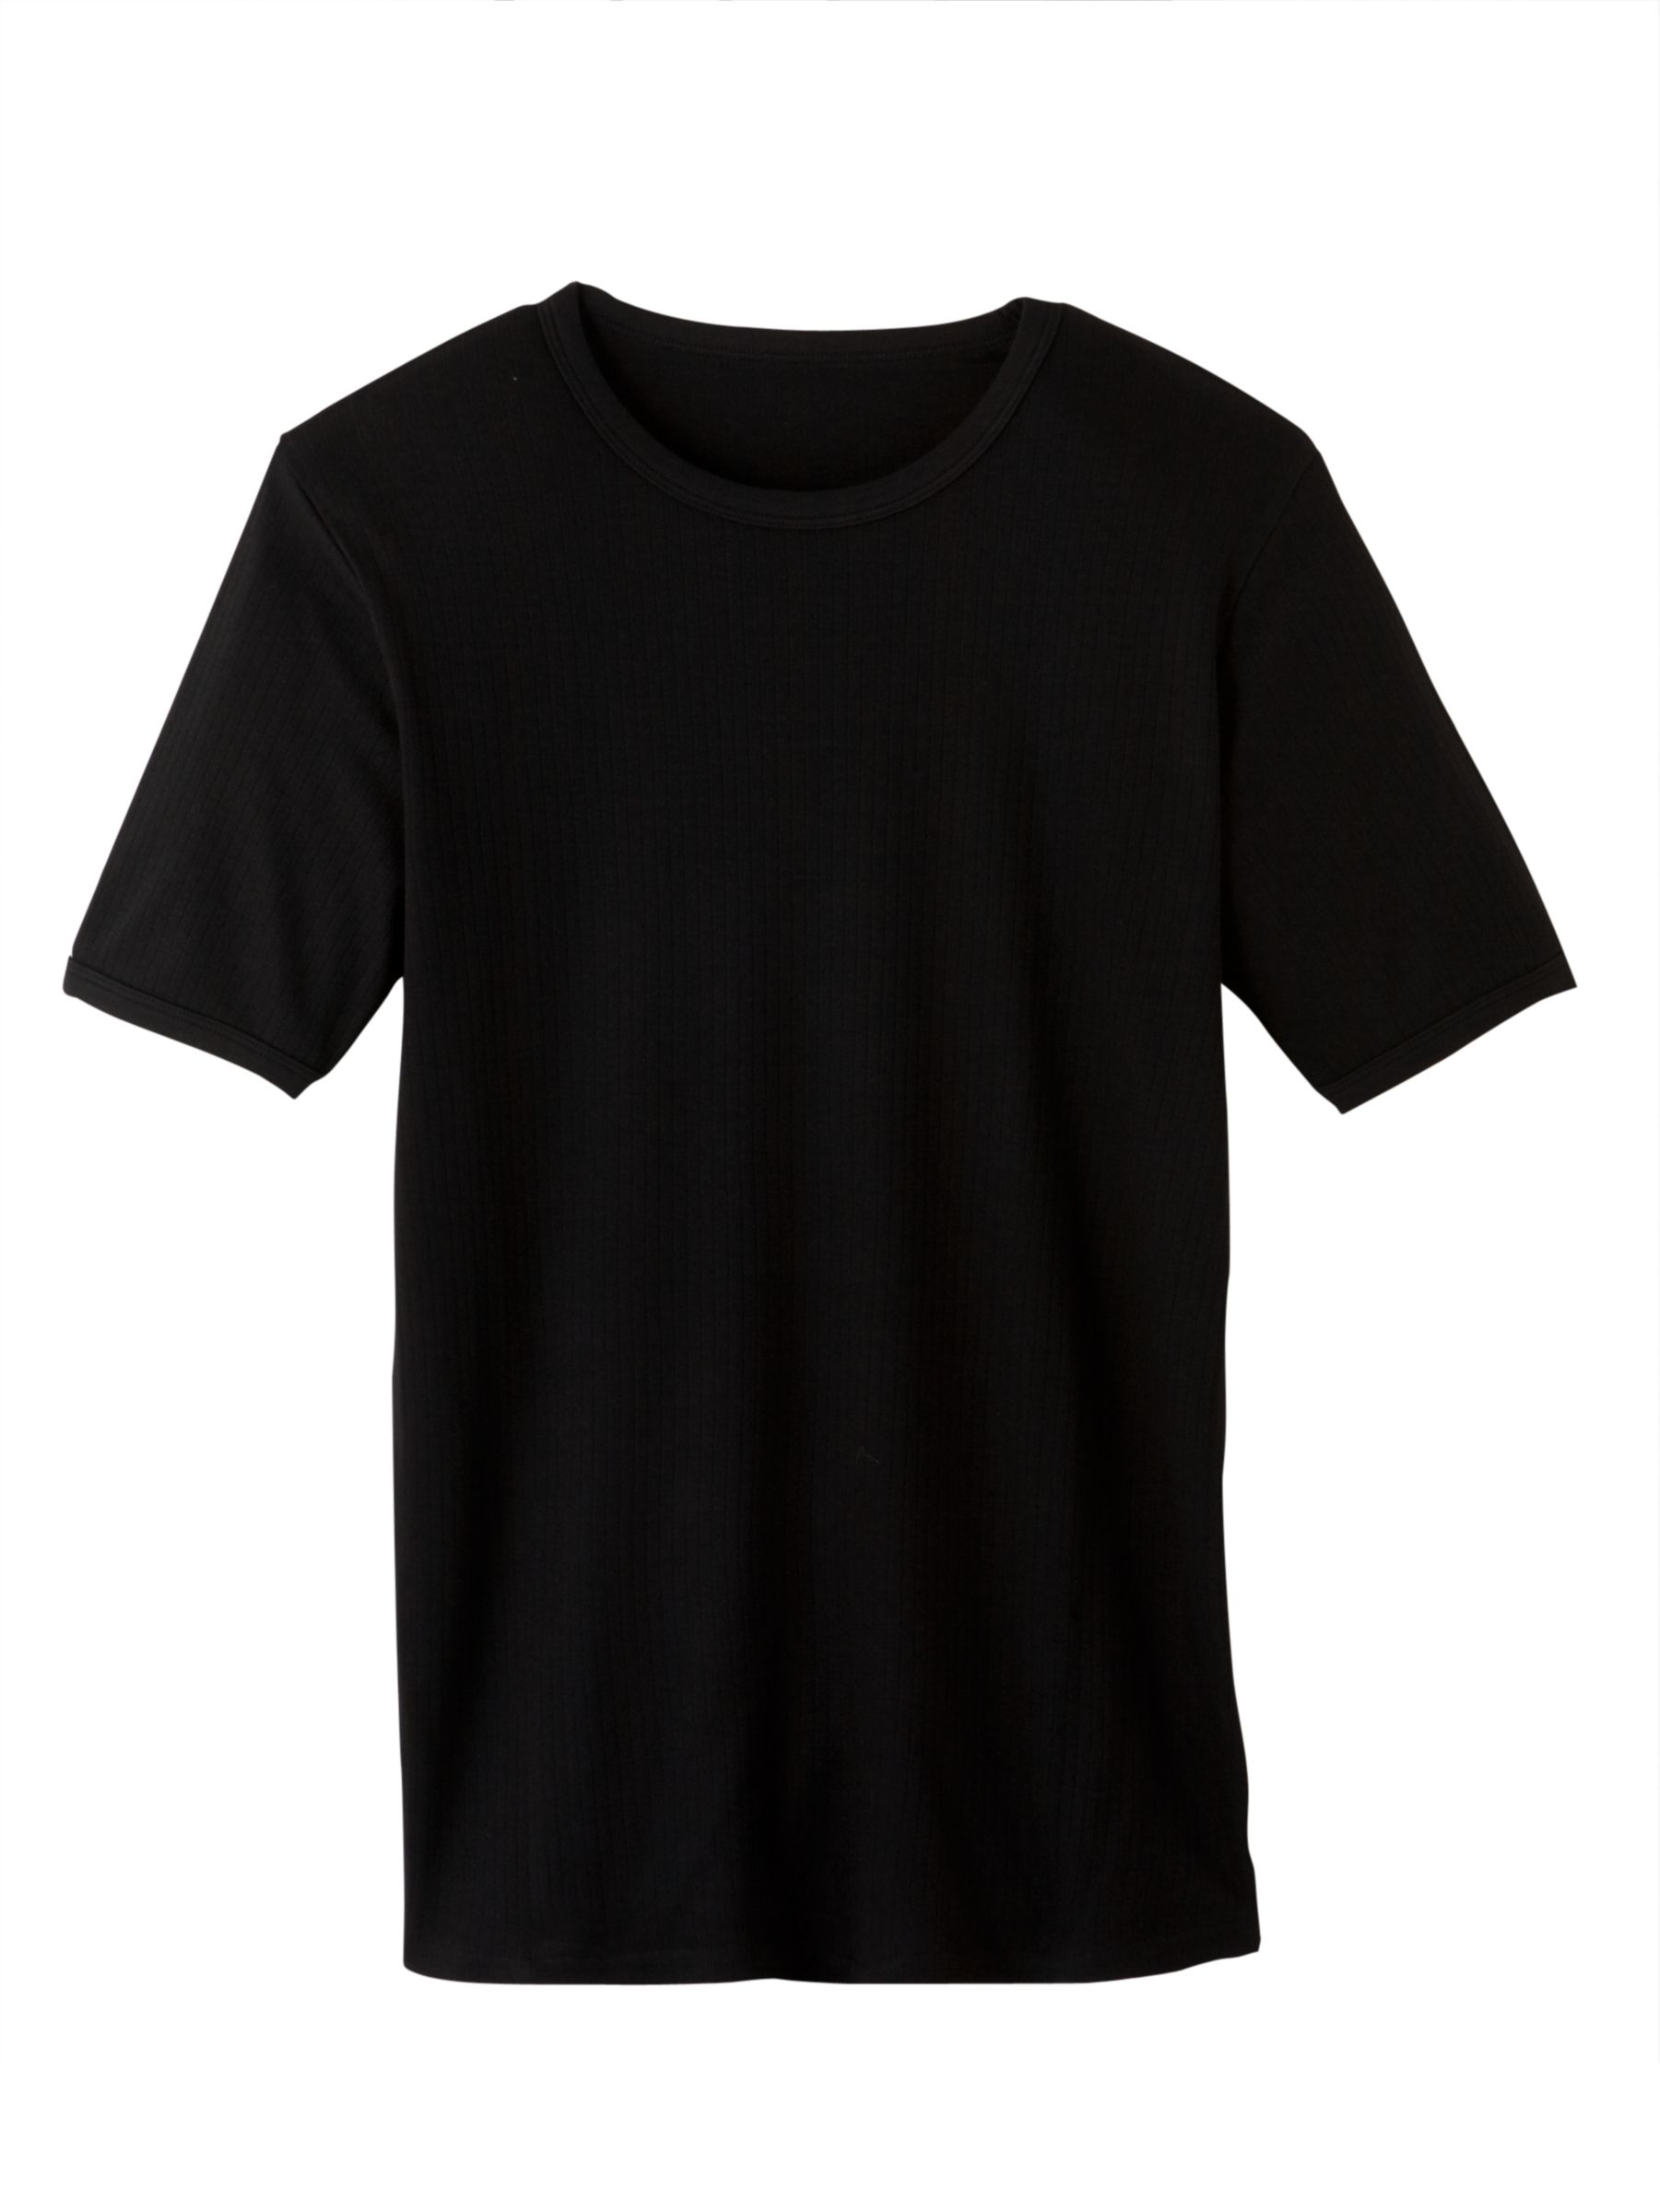 Mens Thermal T-Shirt, Black, Large